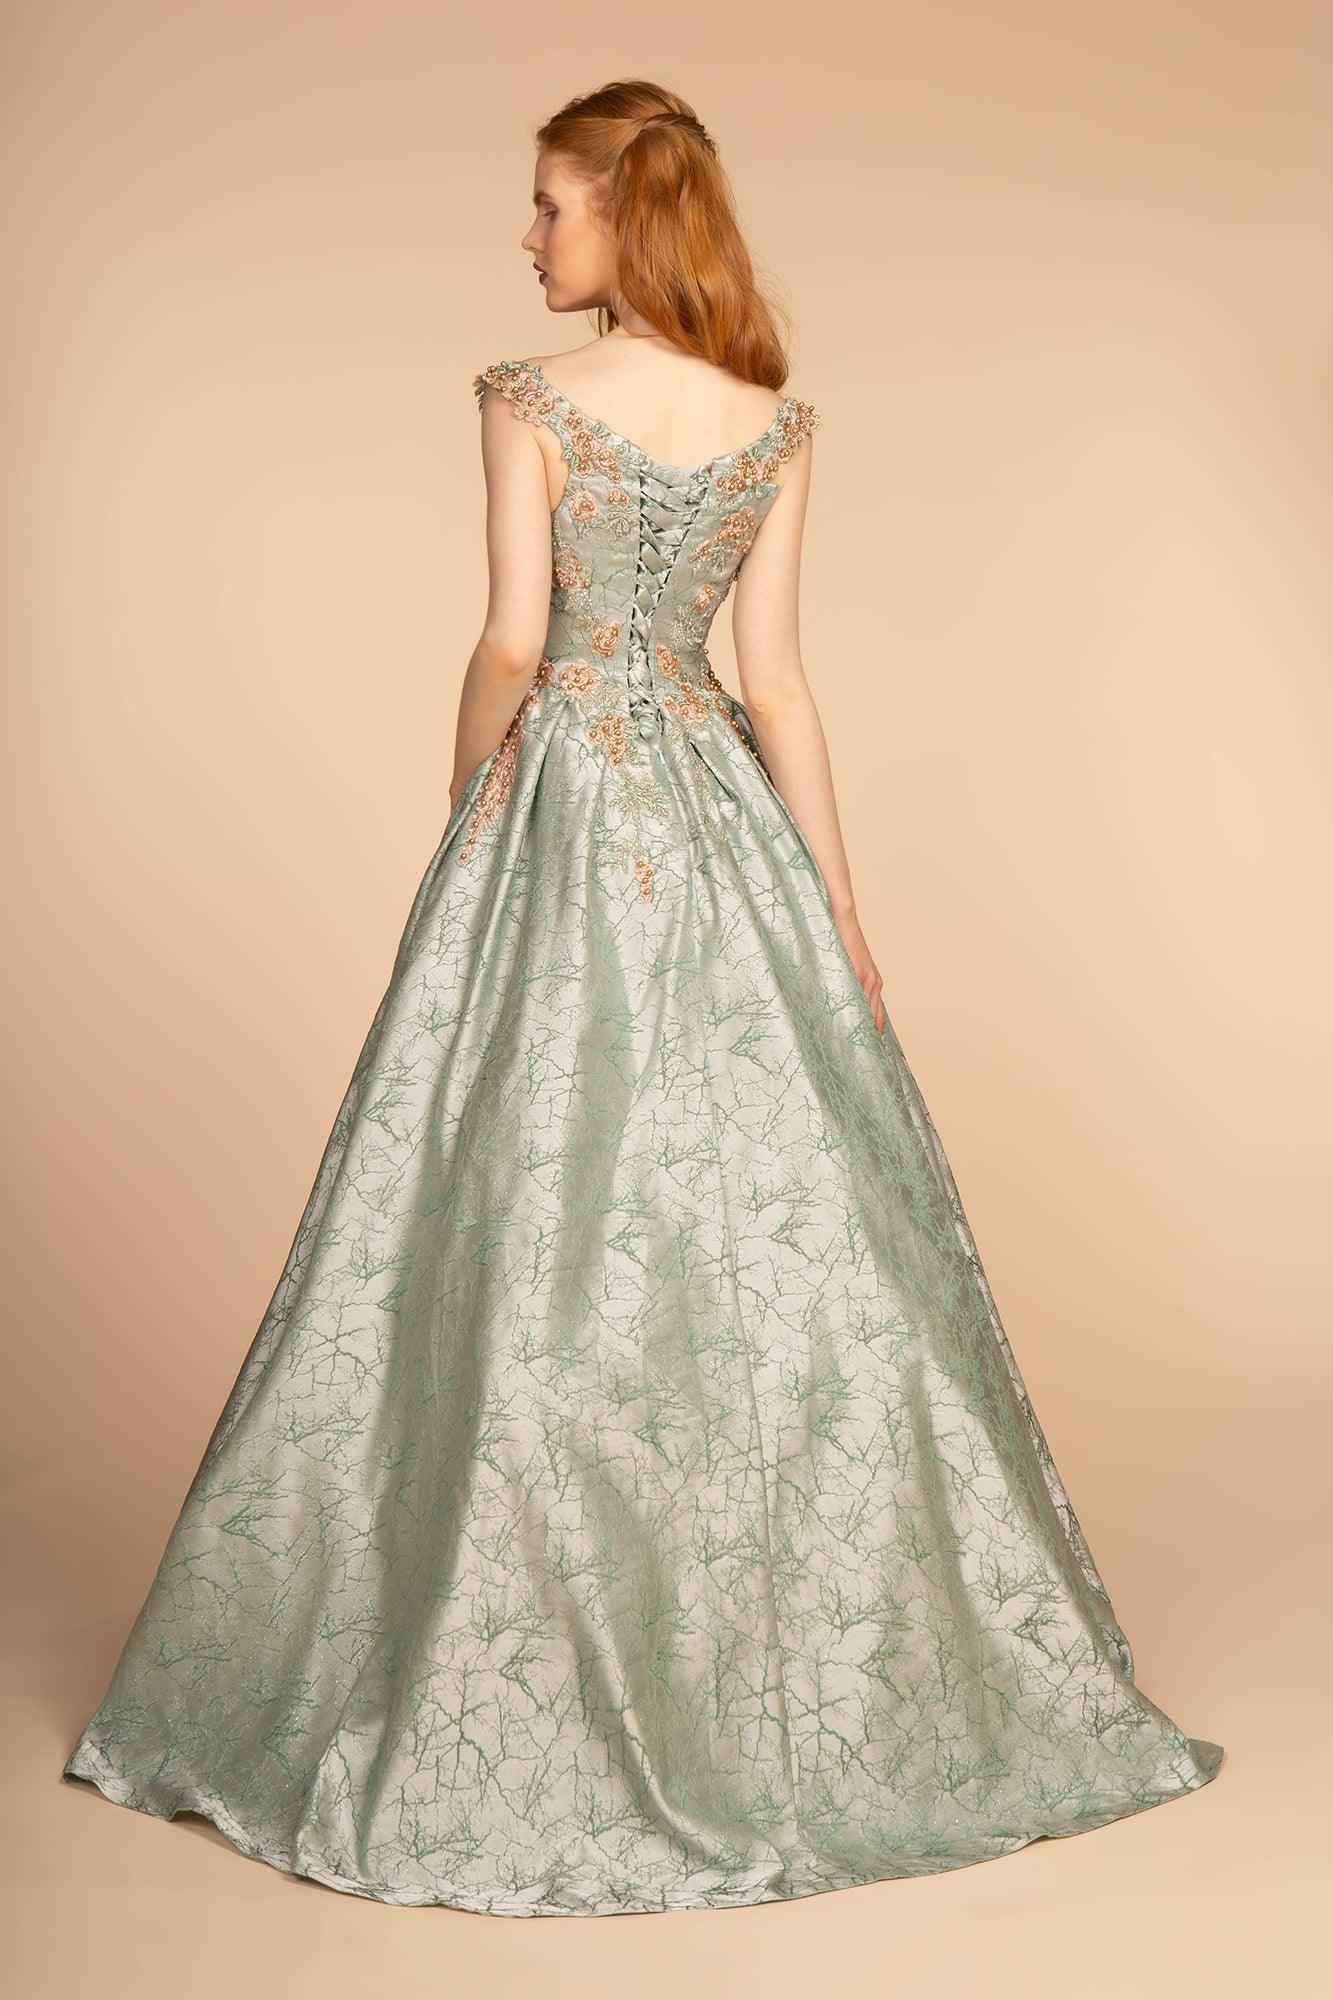 Floral Jewel Embellished Long Prom Dress - The Dress Outlet Elizabeth K